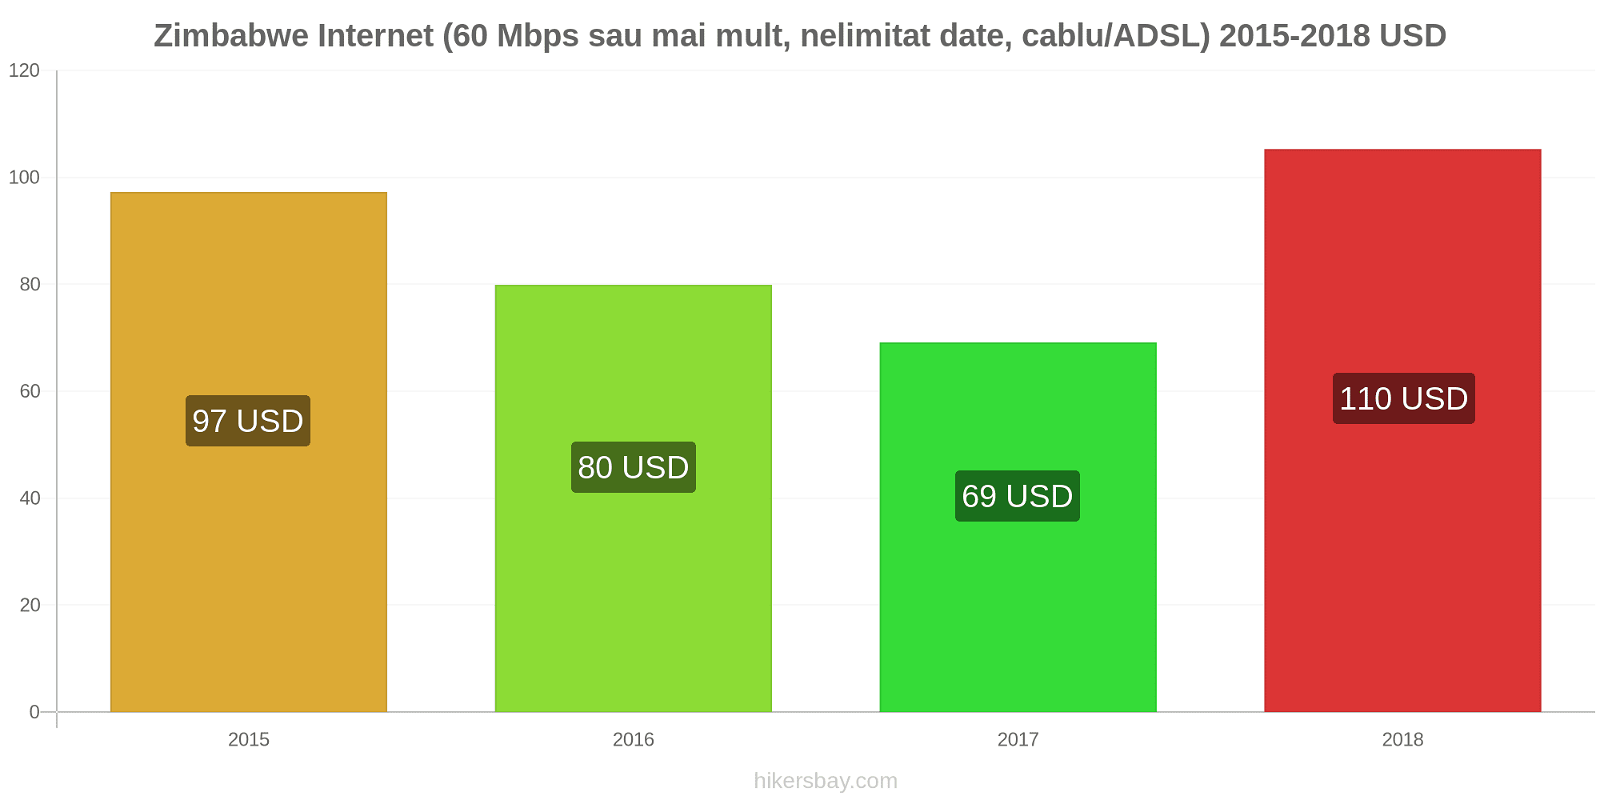 Zimbabwe schimbări de prețuri Internet (60 Mbps sau mai mult, date nelimitate, cablu/ADSL) hikersbay.com